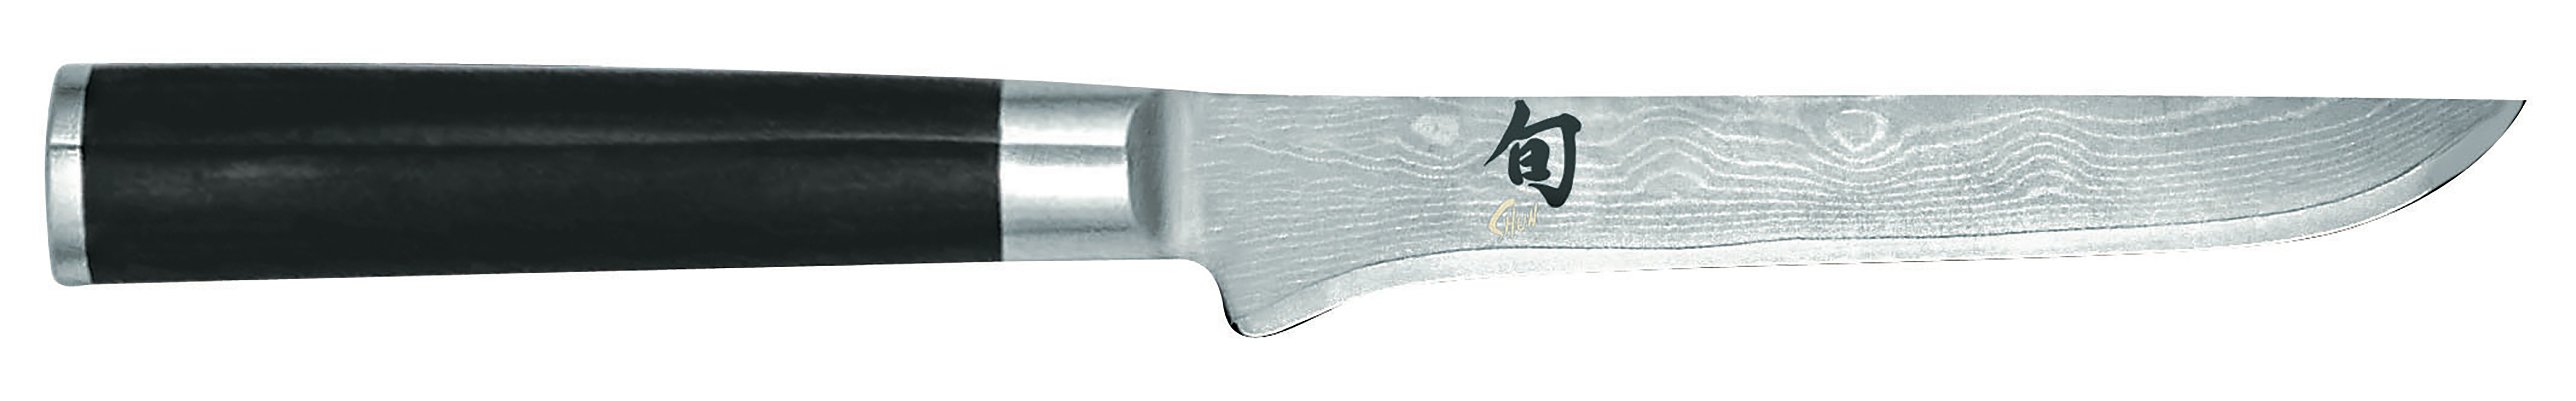 KAI SHUN CLASSIC Ausbeinmesser 15cm